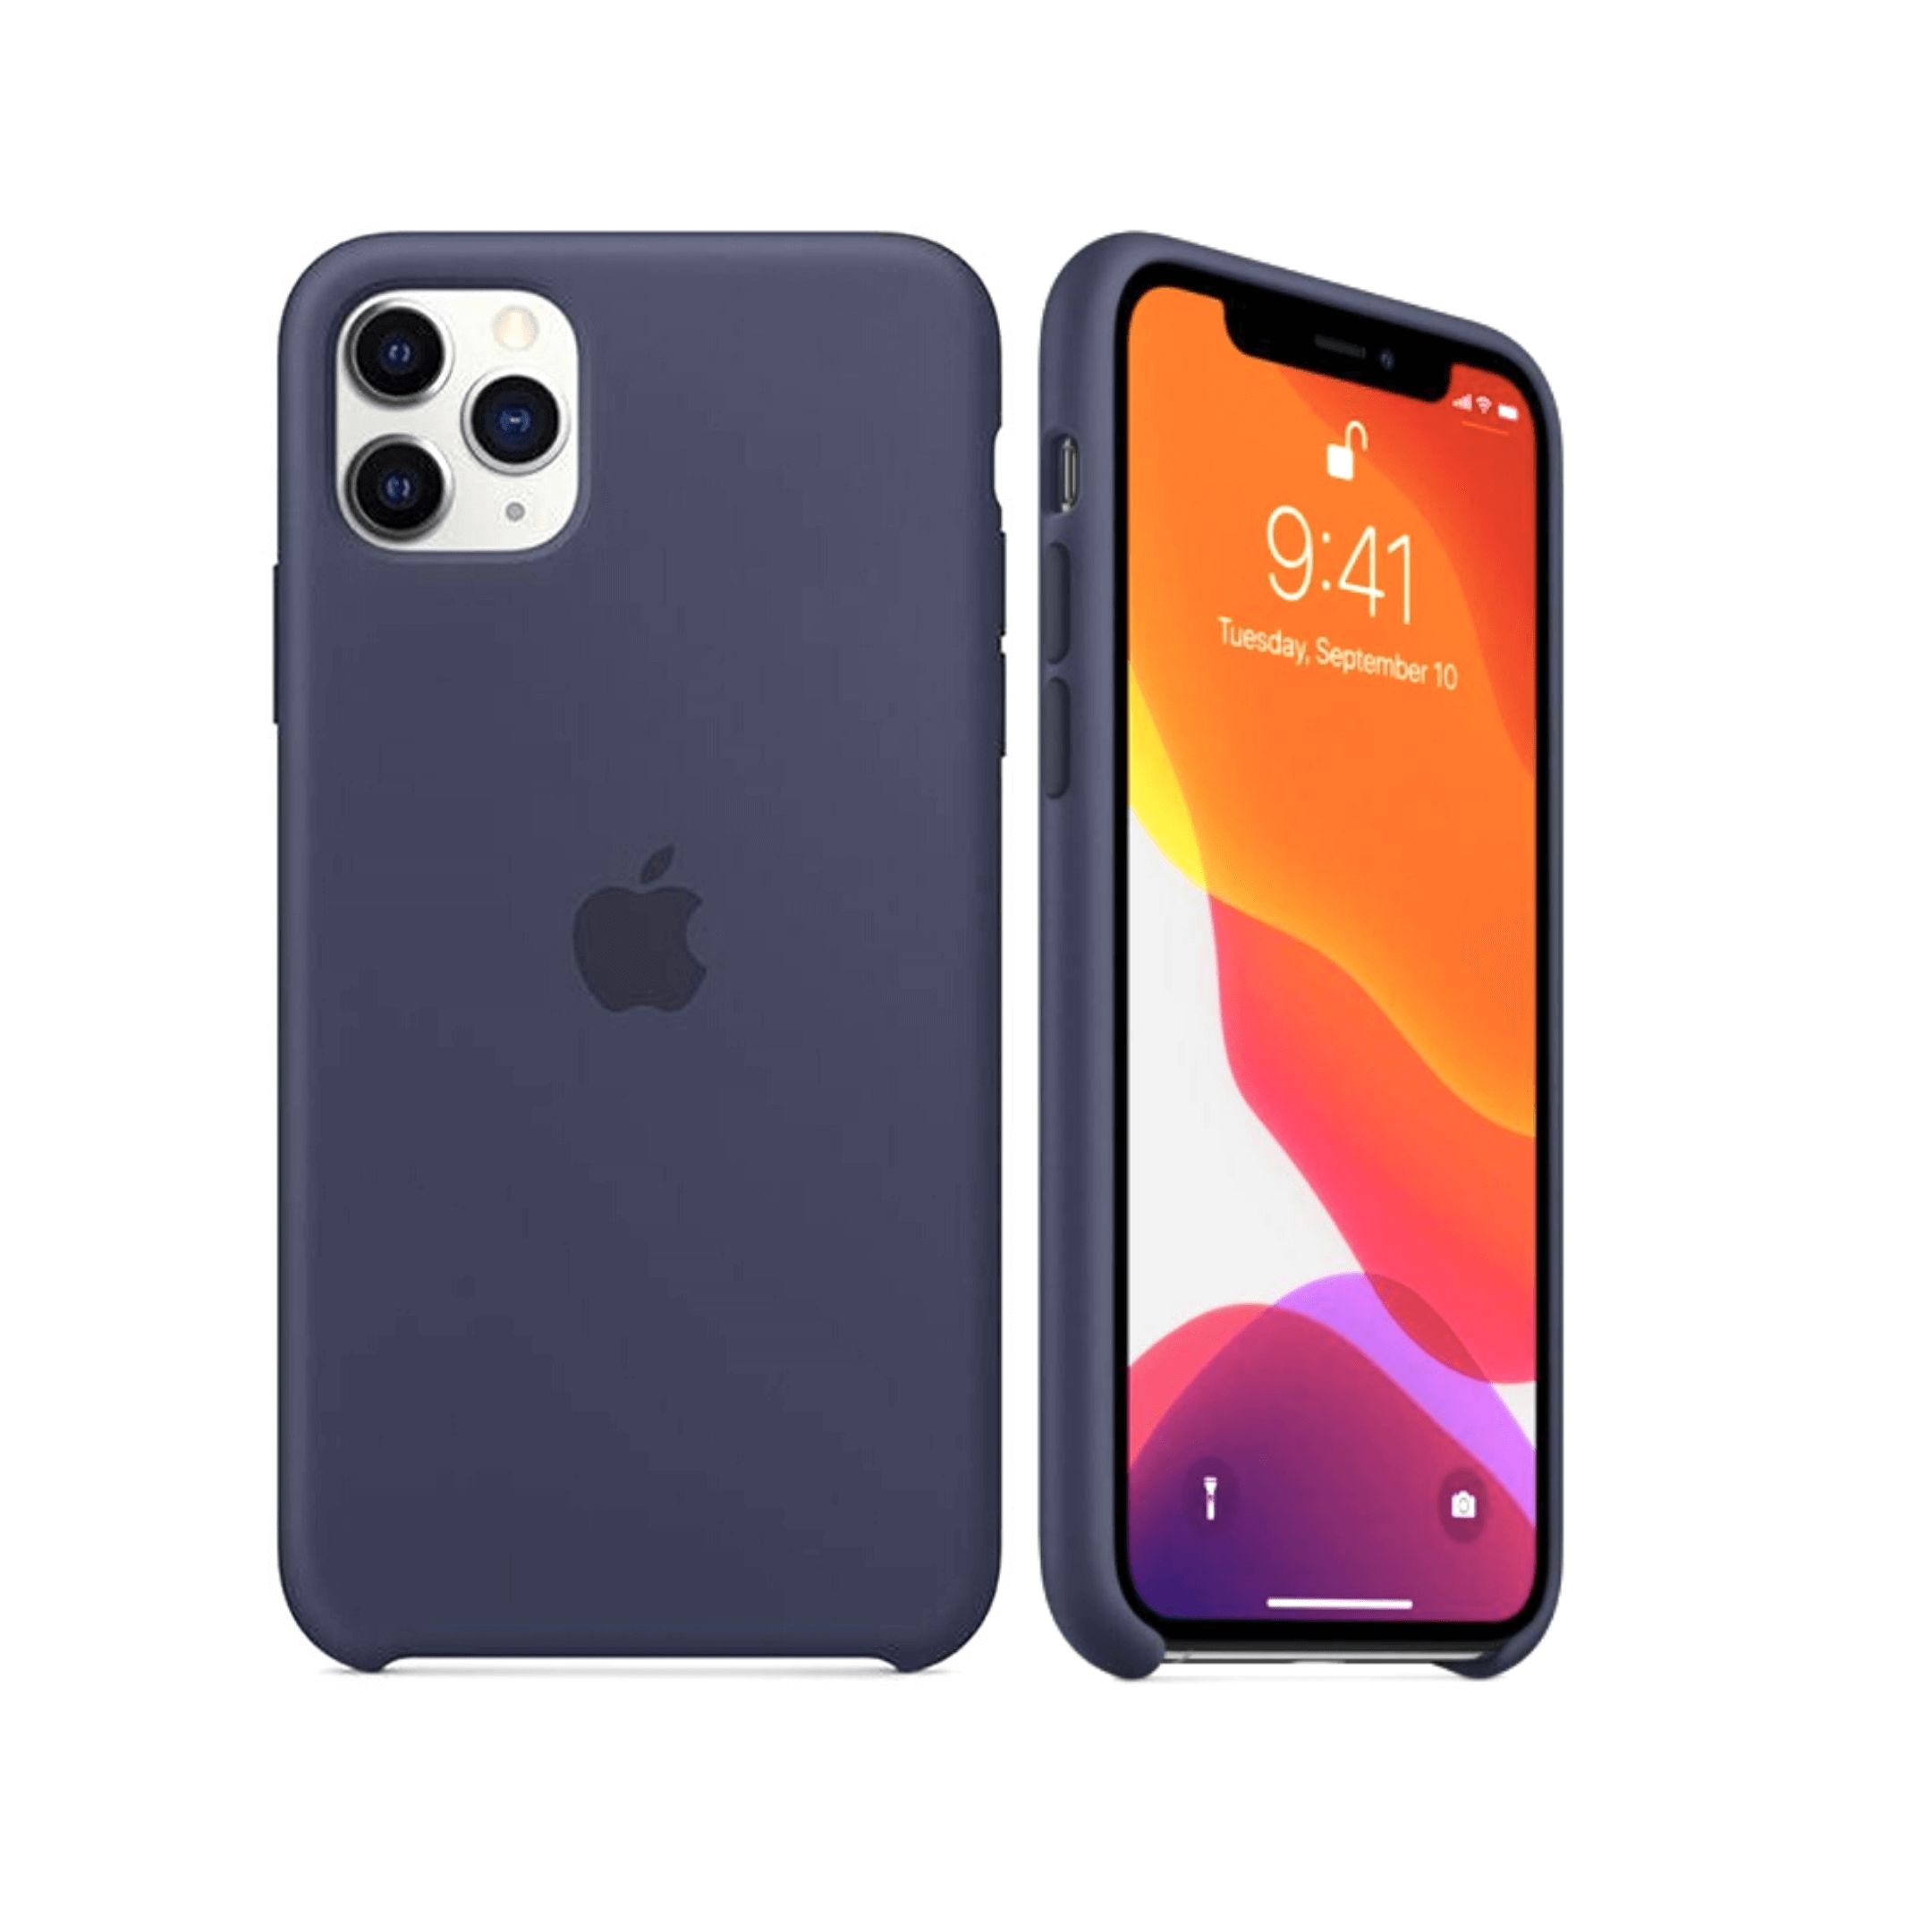 Capa Case De Silicone Apple Iphone 11 Azul Marinho em Promoção na